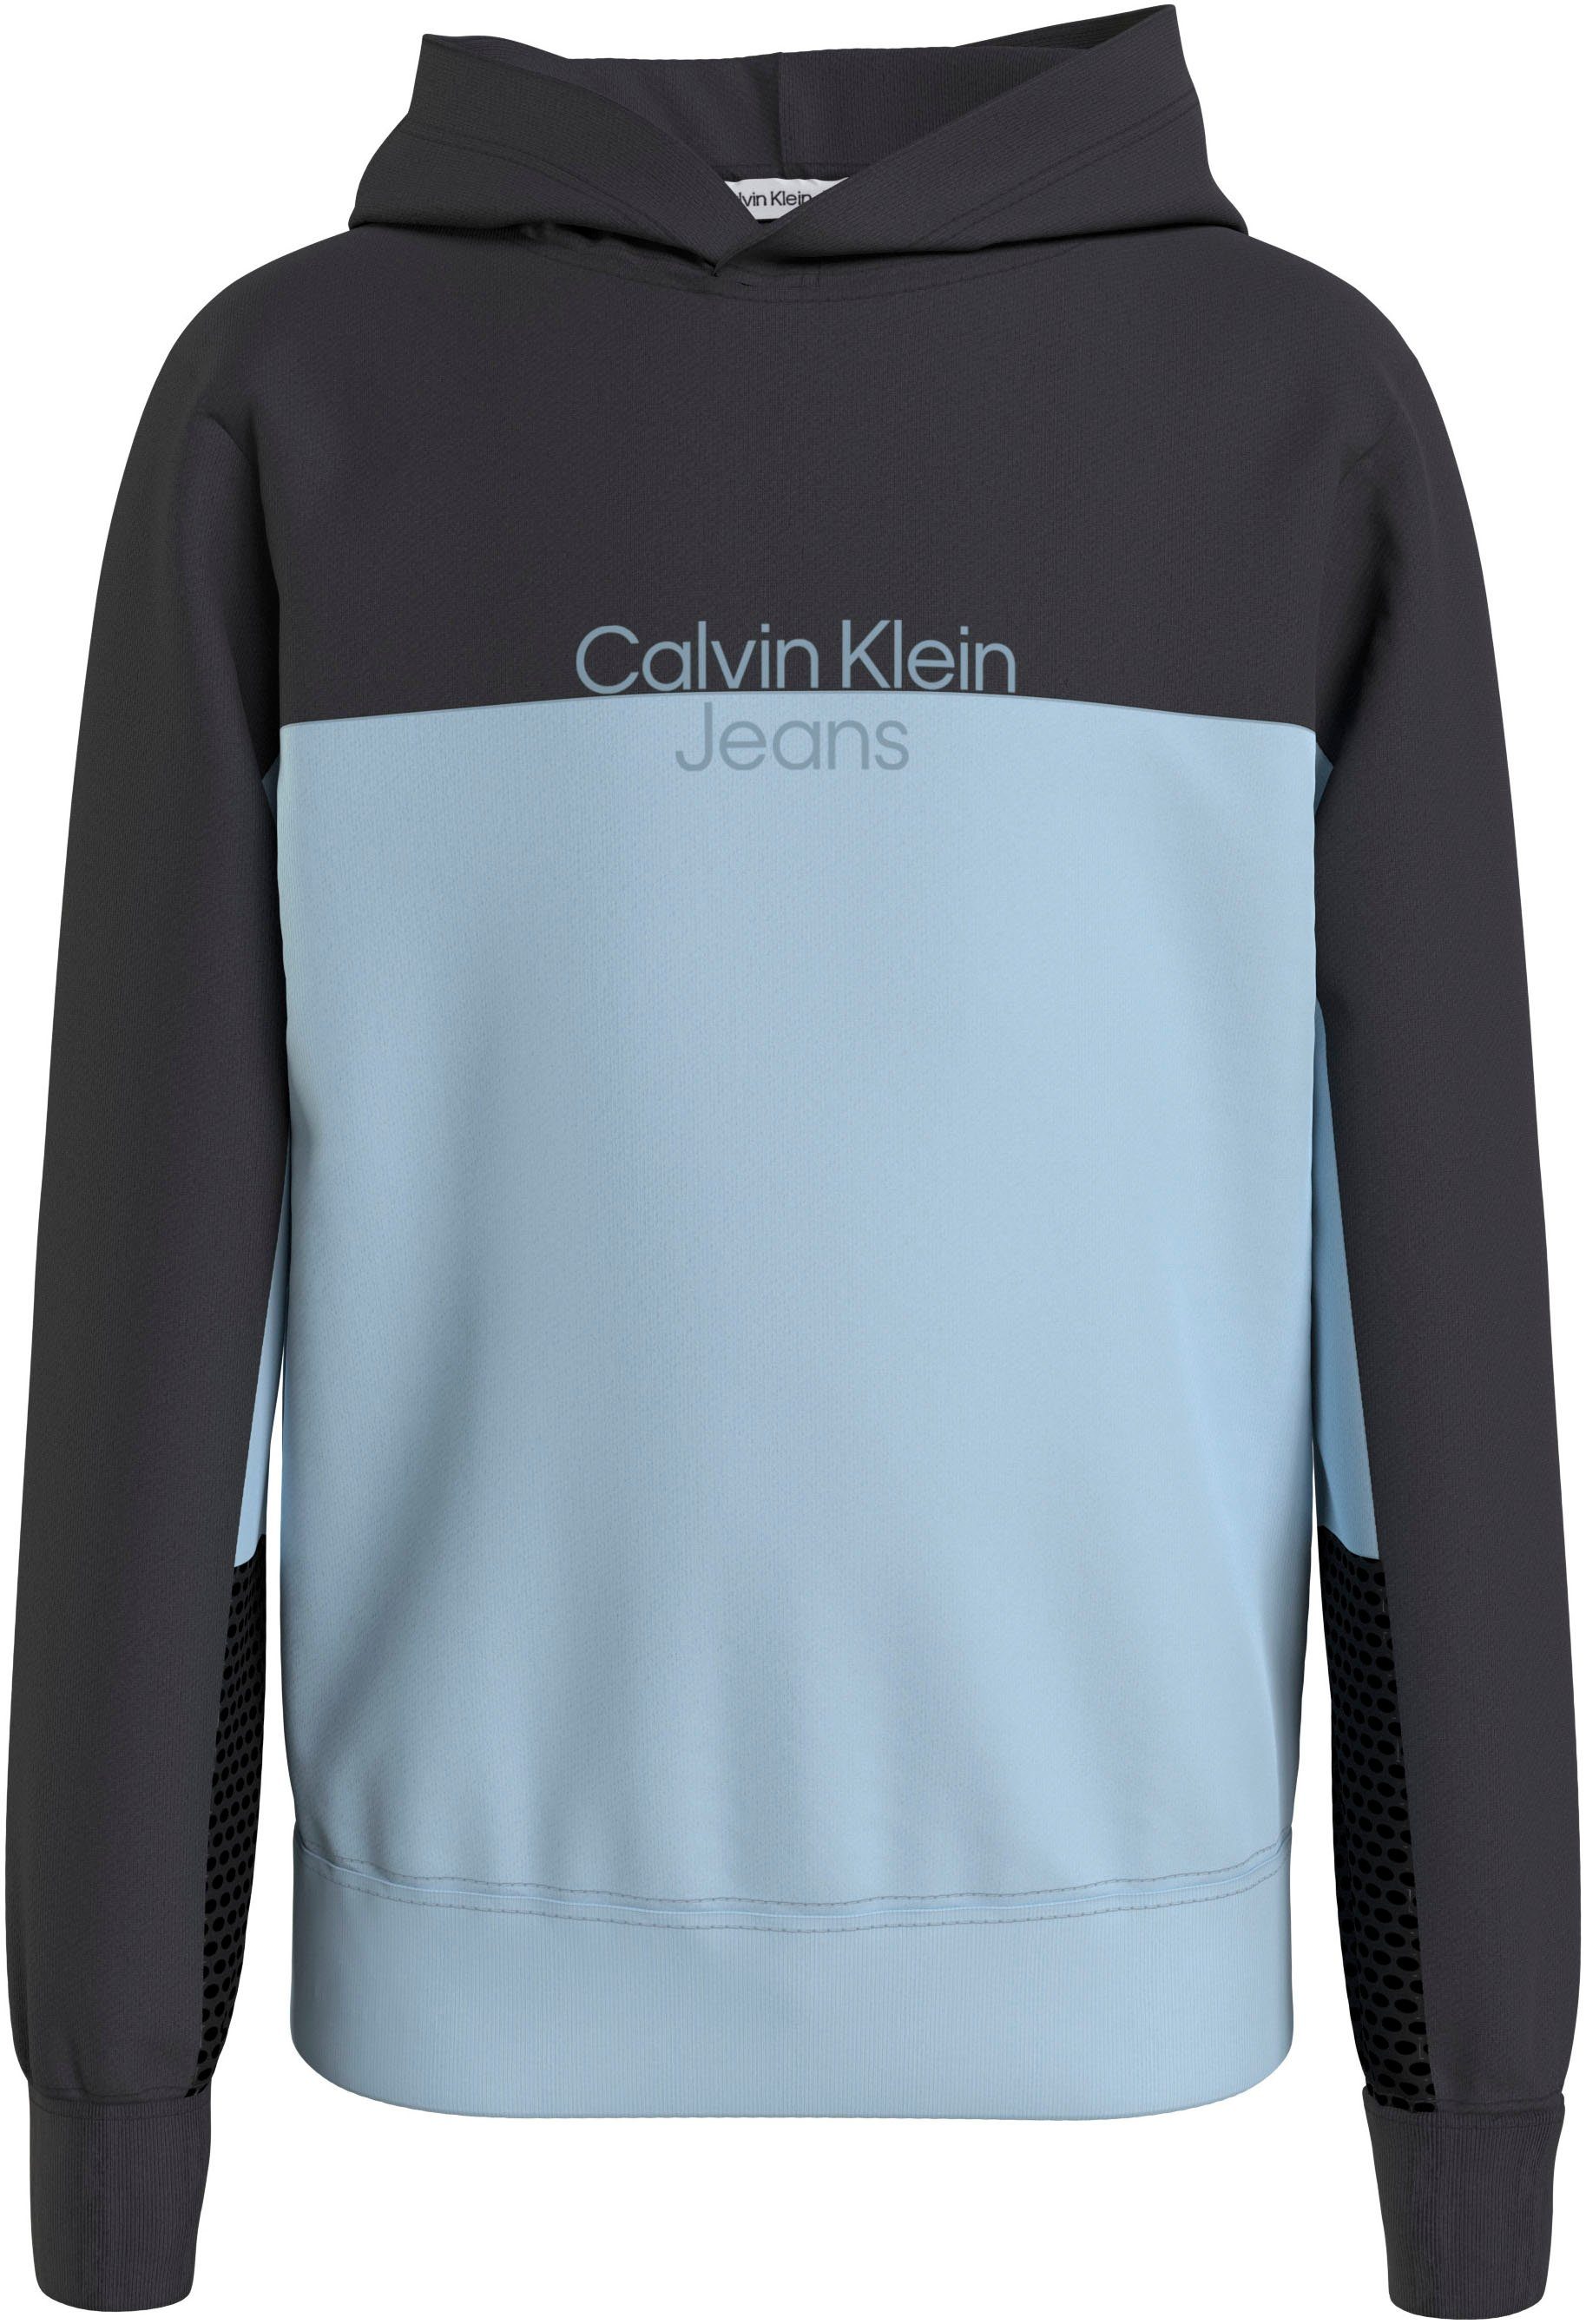 COLOR für HOODIE Calvin Klein Jeans Sweatshirt 16 REG. TERRY BLOCK Jahre Kinder bis